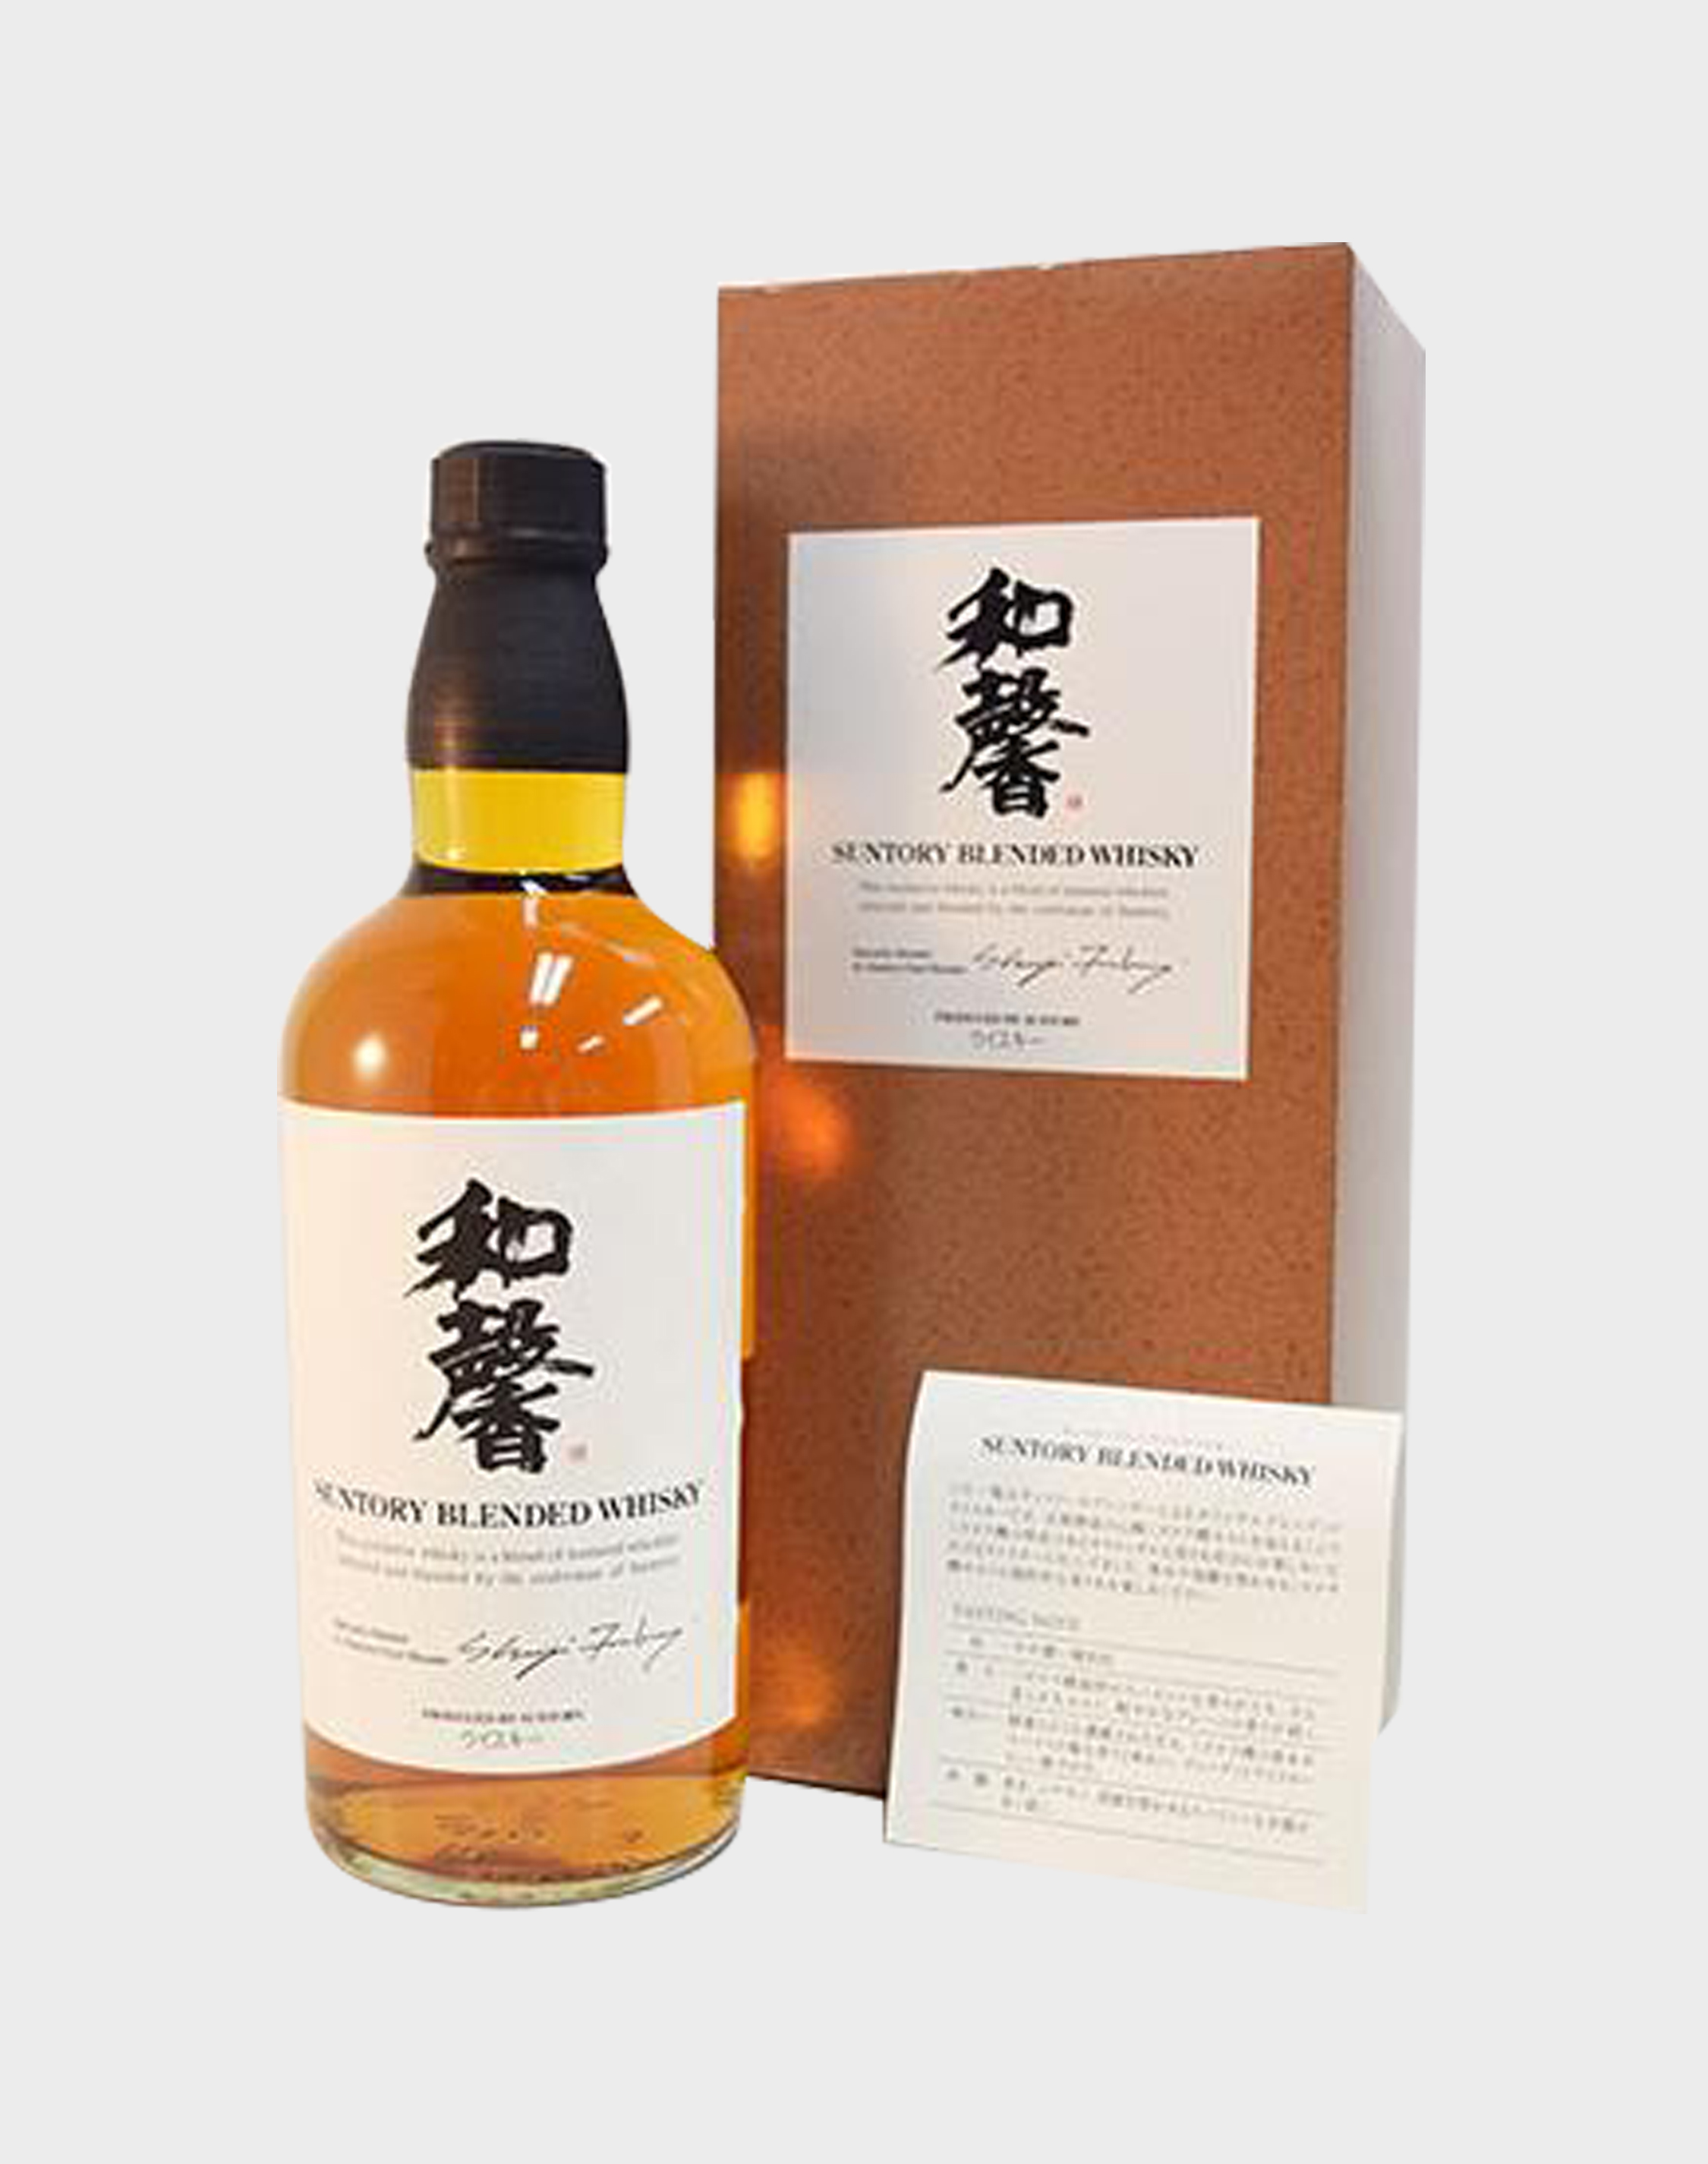 Suntory Blended Whisky Shinanoya